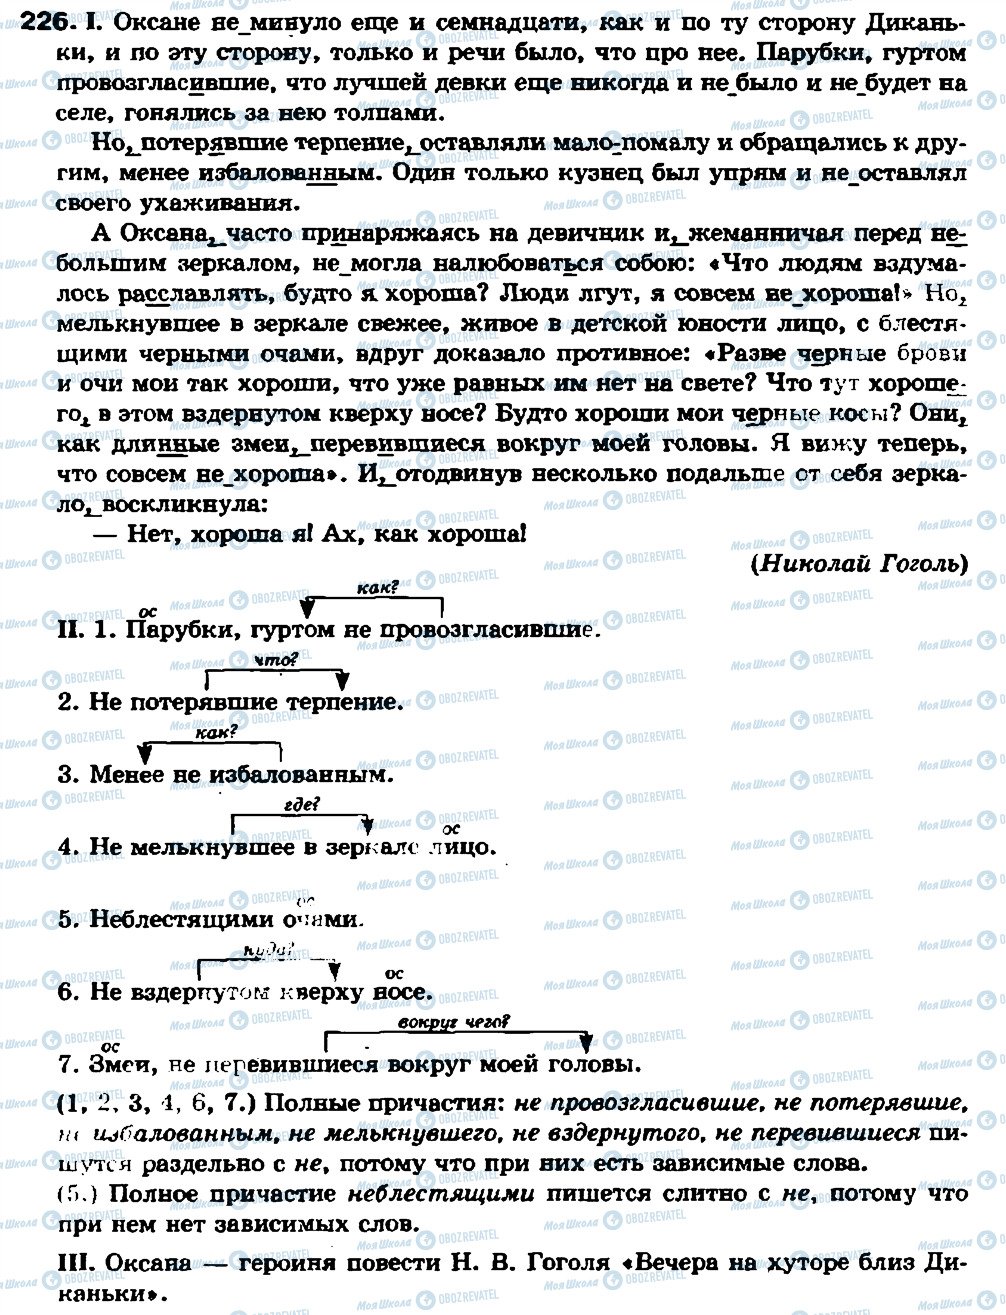 ГДЗ Російська мова 7 клас сторінка 226